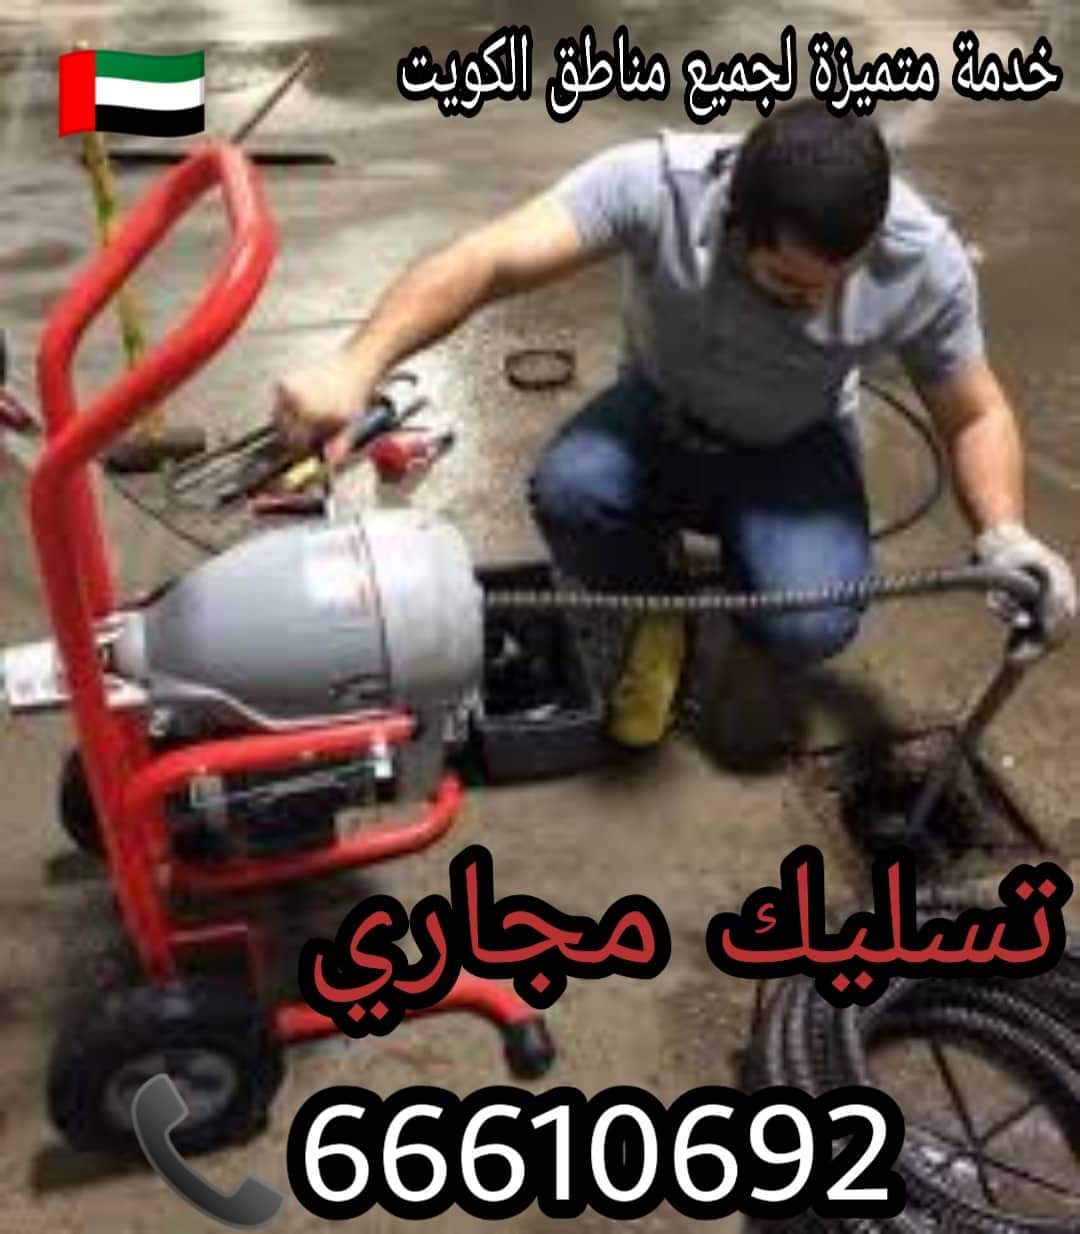 تسليك مجاري الدسمة / 66610692 / صيانة وتركيب فني صحي بالعاصمة